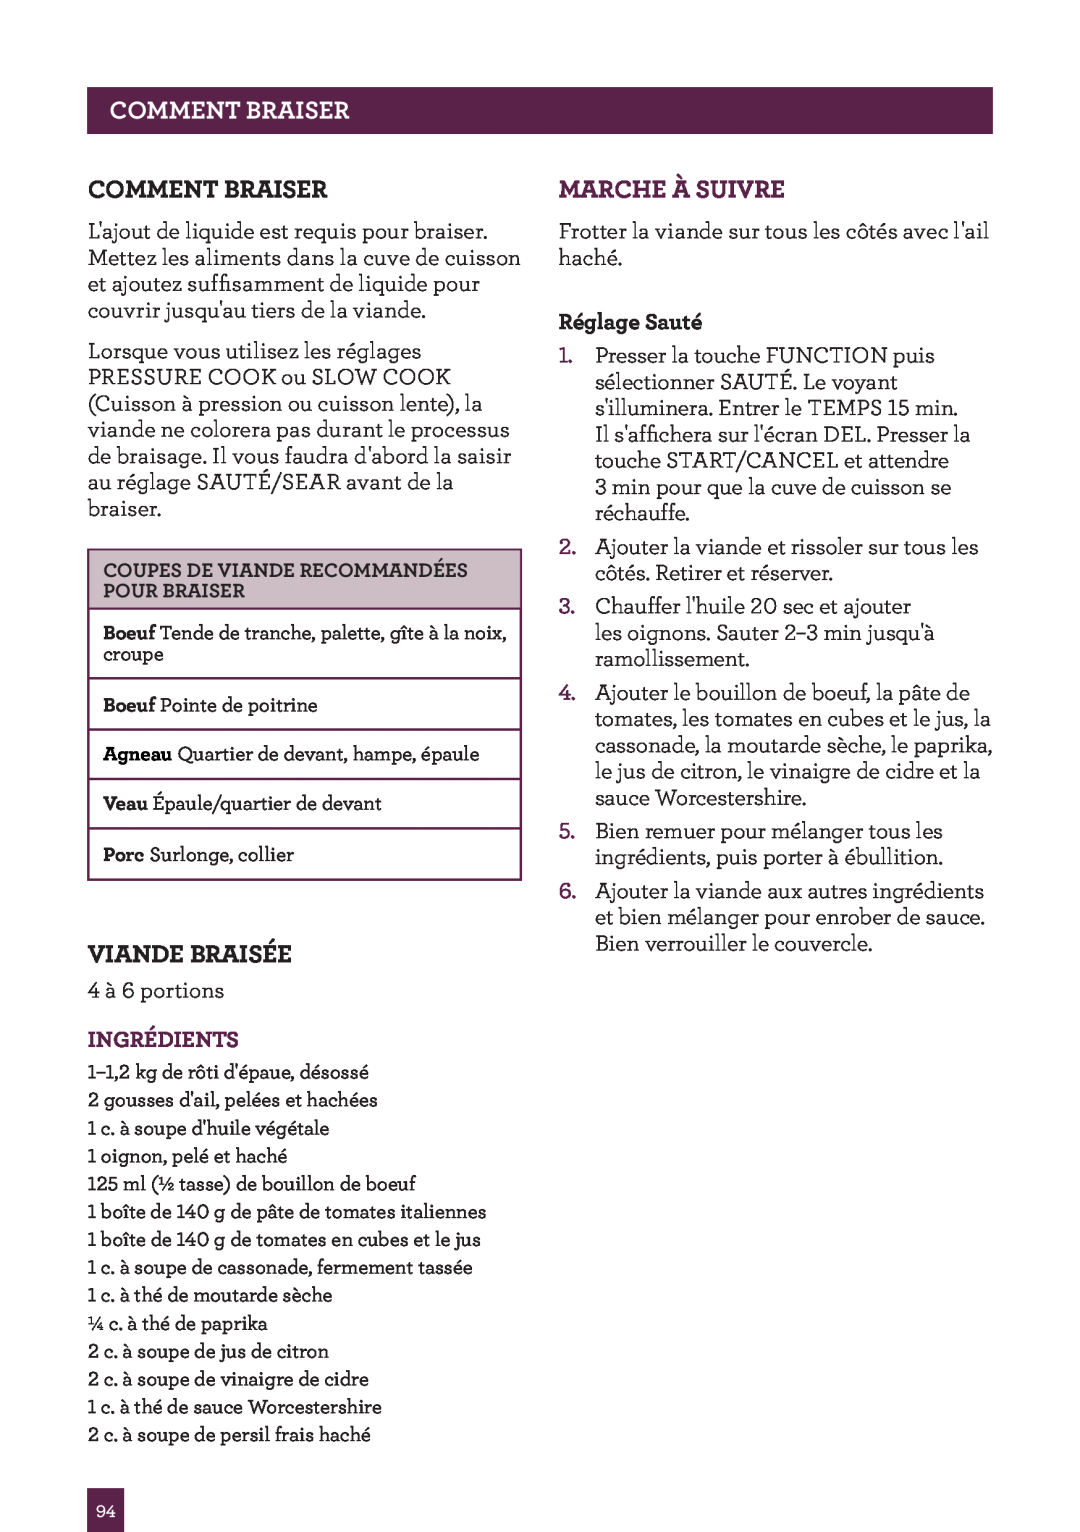 Breville BPR600XL Issue - A12 Pagecommentheaderb Aiser, Comment Braiser, Viande Braisée, Marche À Suivre, Ingrédients 